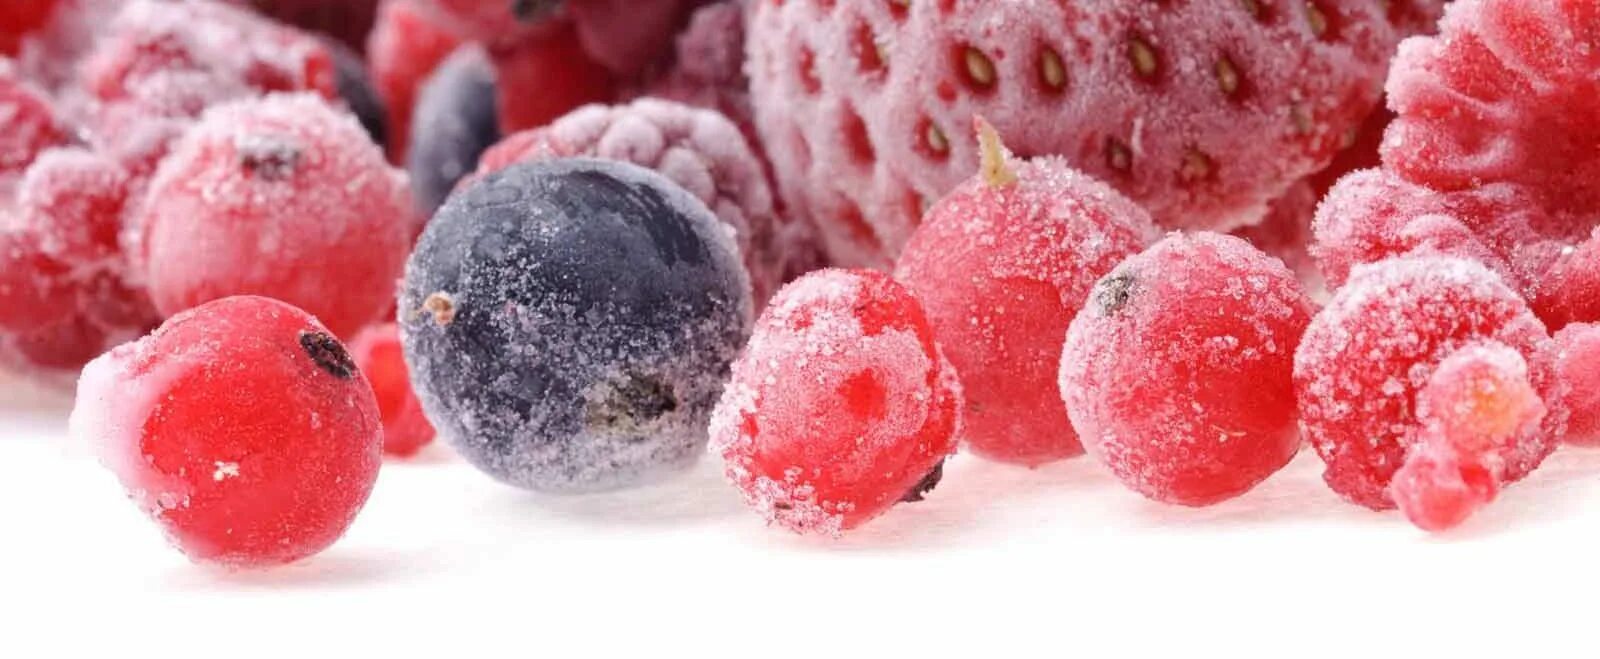 Freezing fruits. Замороженные фрукты и ягоды. Заморозка ягод. Замороженные овощи и фрукты. Ягода свежемороженая.